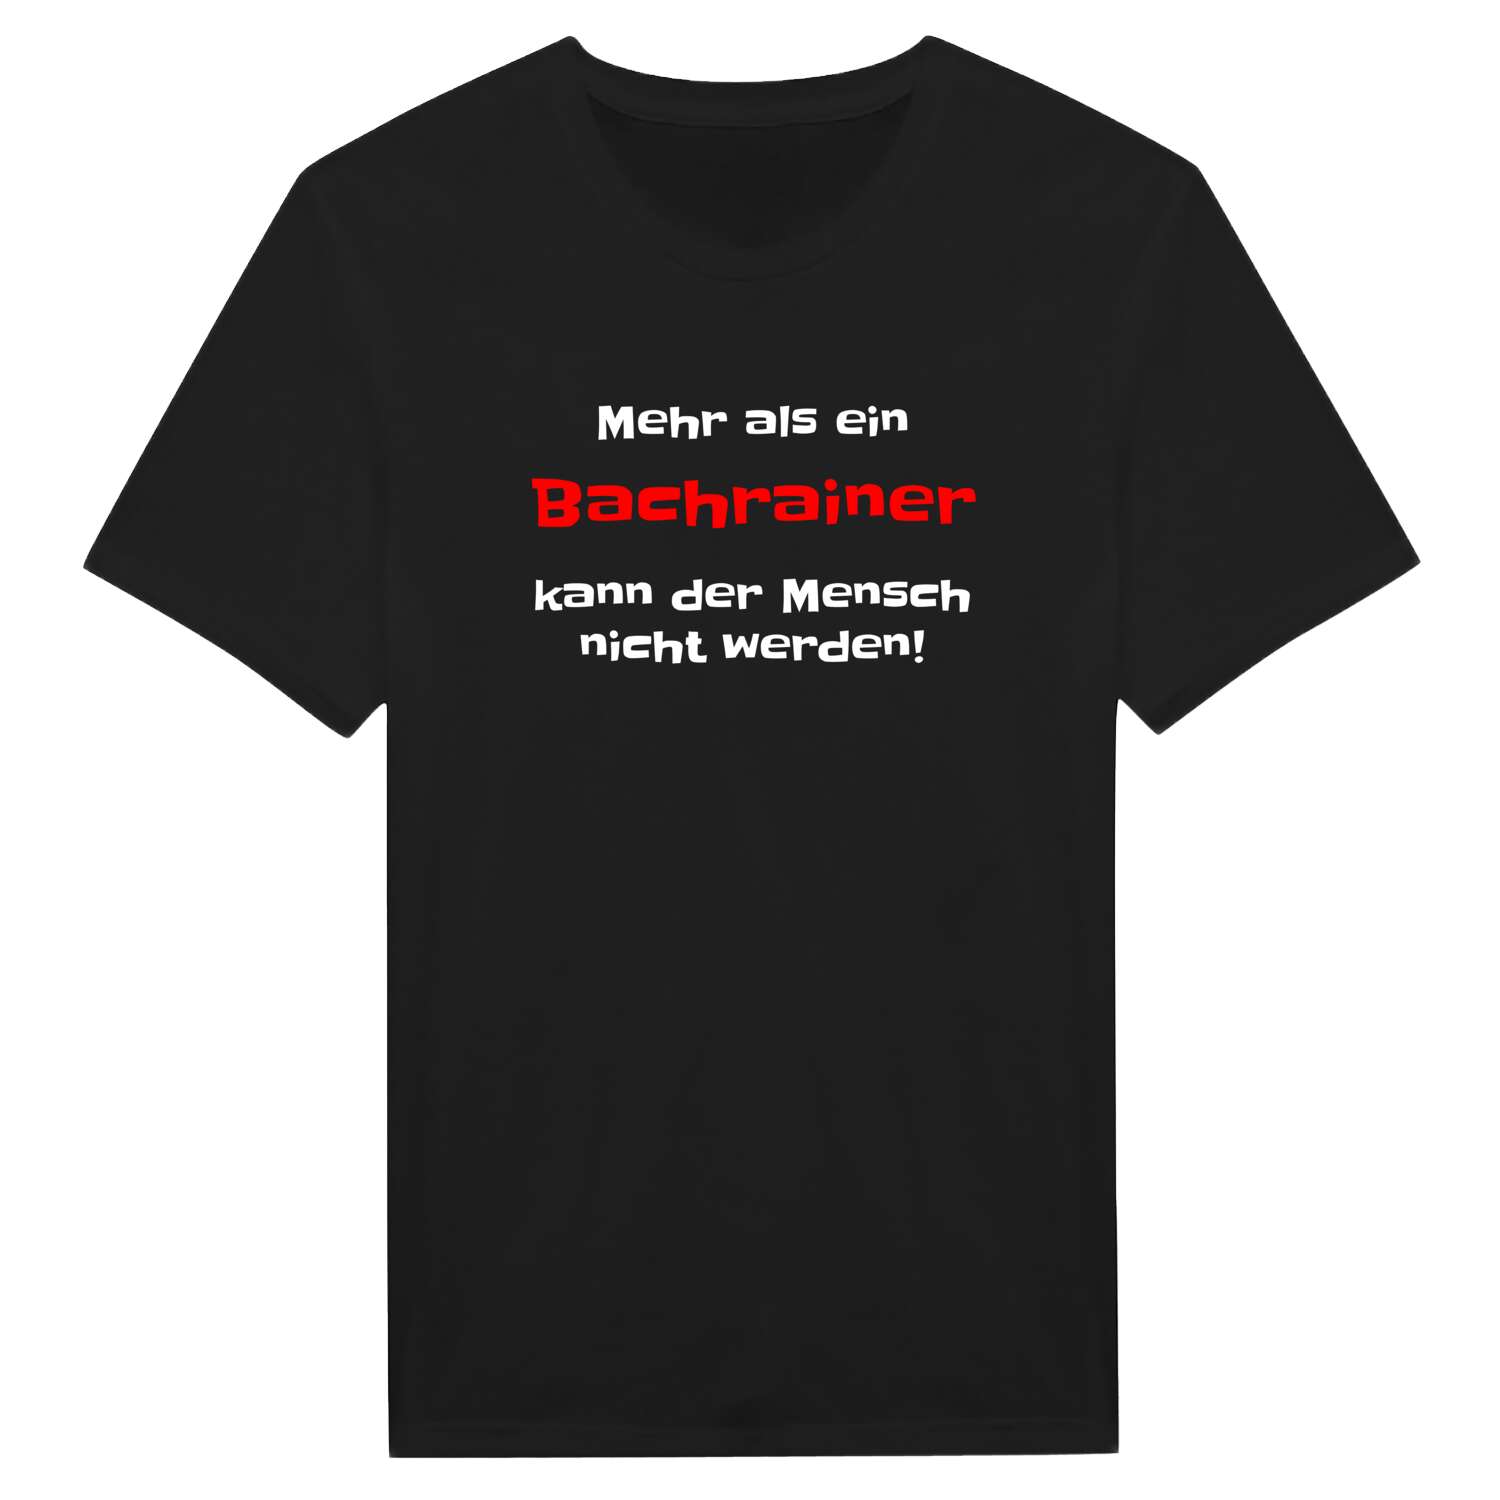 Bachrain T-Shirt »Mehr als ein«